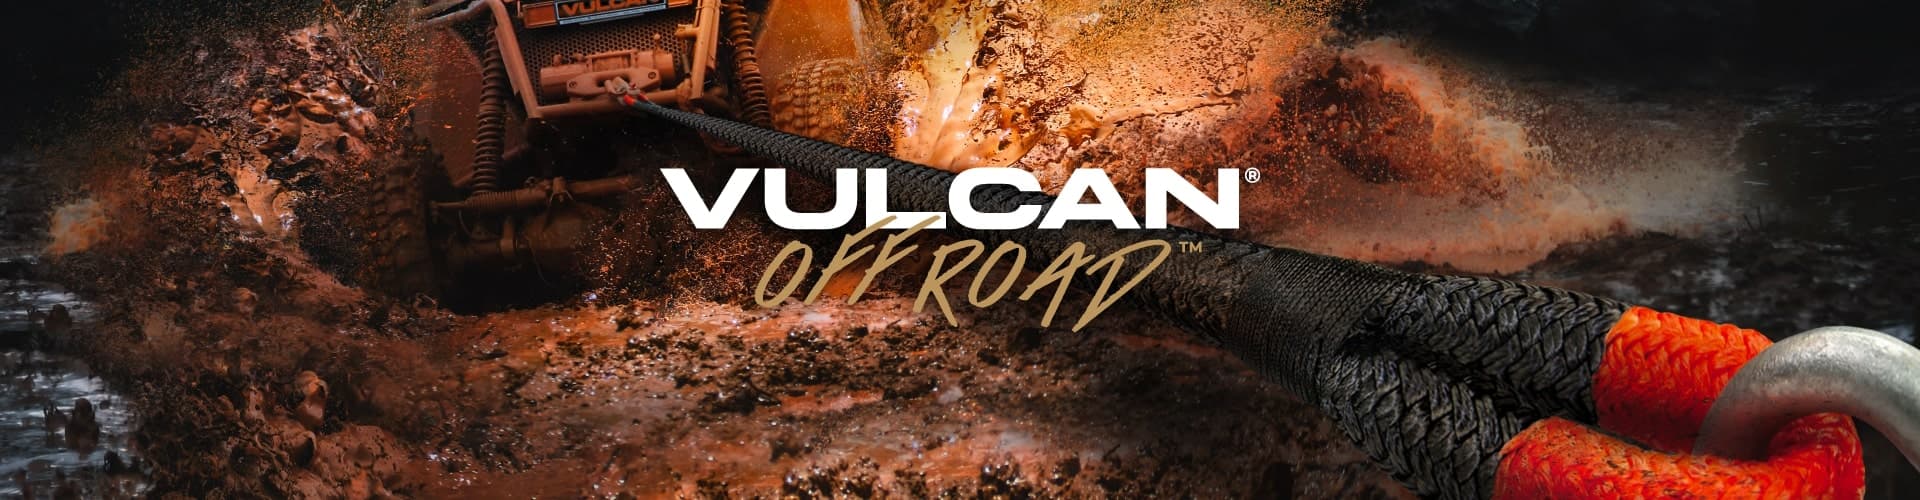 Vulcan off road